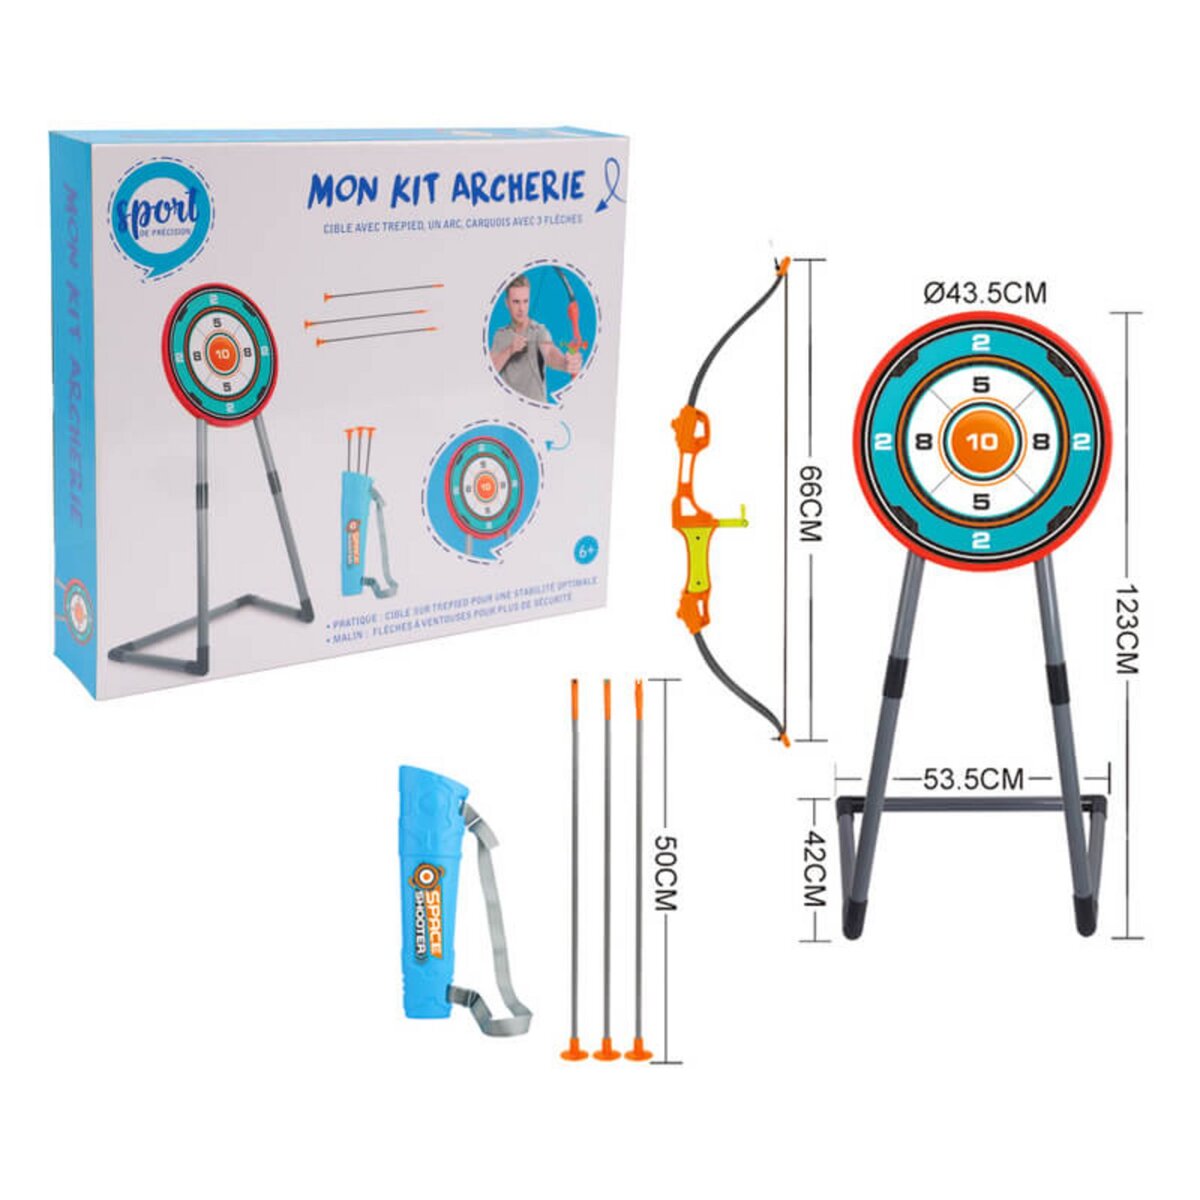 PICWICTOYS Tir à l'arc - Mon Kit Archerie